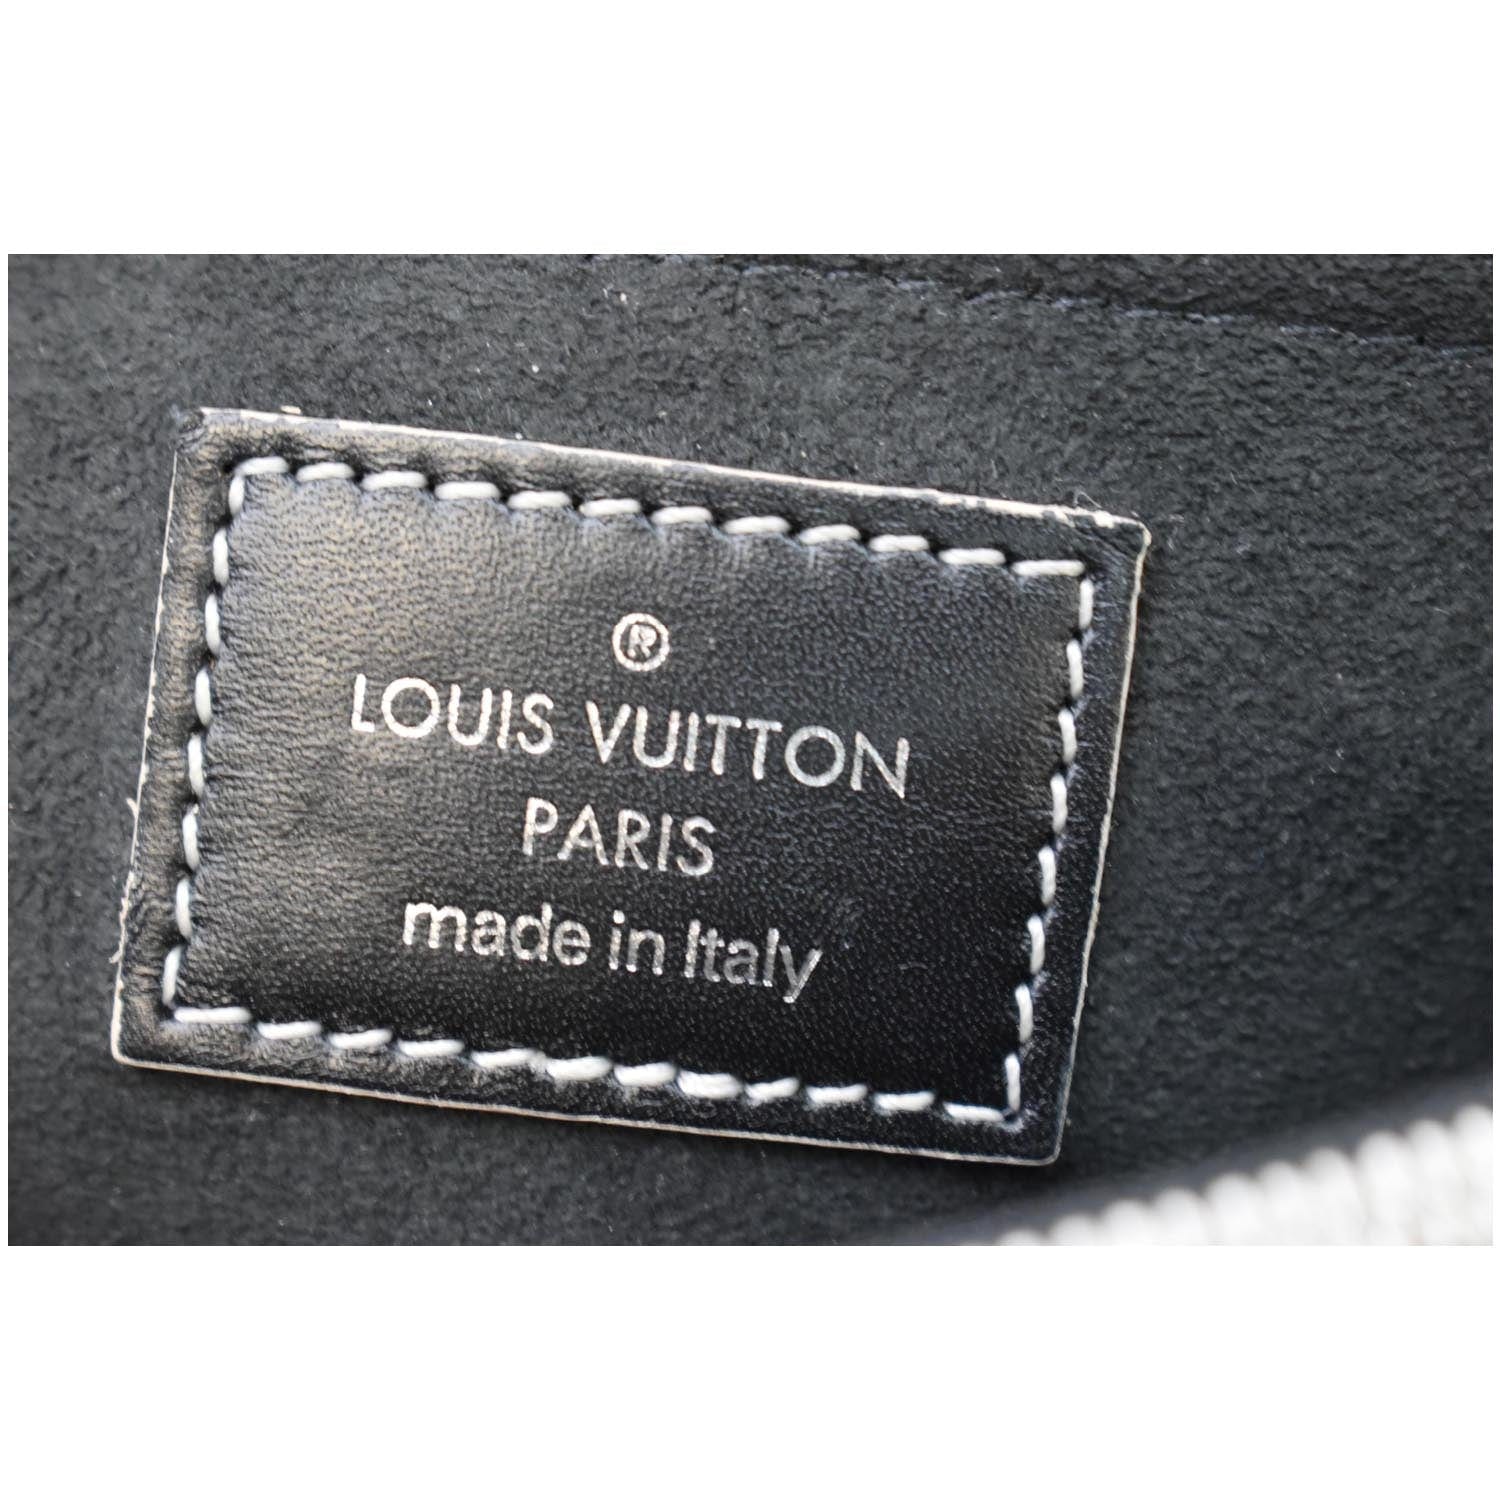 Áo phông nam Louis Vuitton họa tiết caro chìm logo hoa trước ngực APLV13  siêu cấp like auth 99% - HOANG NGUYEN STORE™